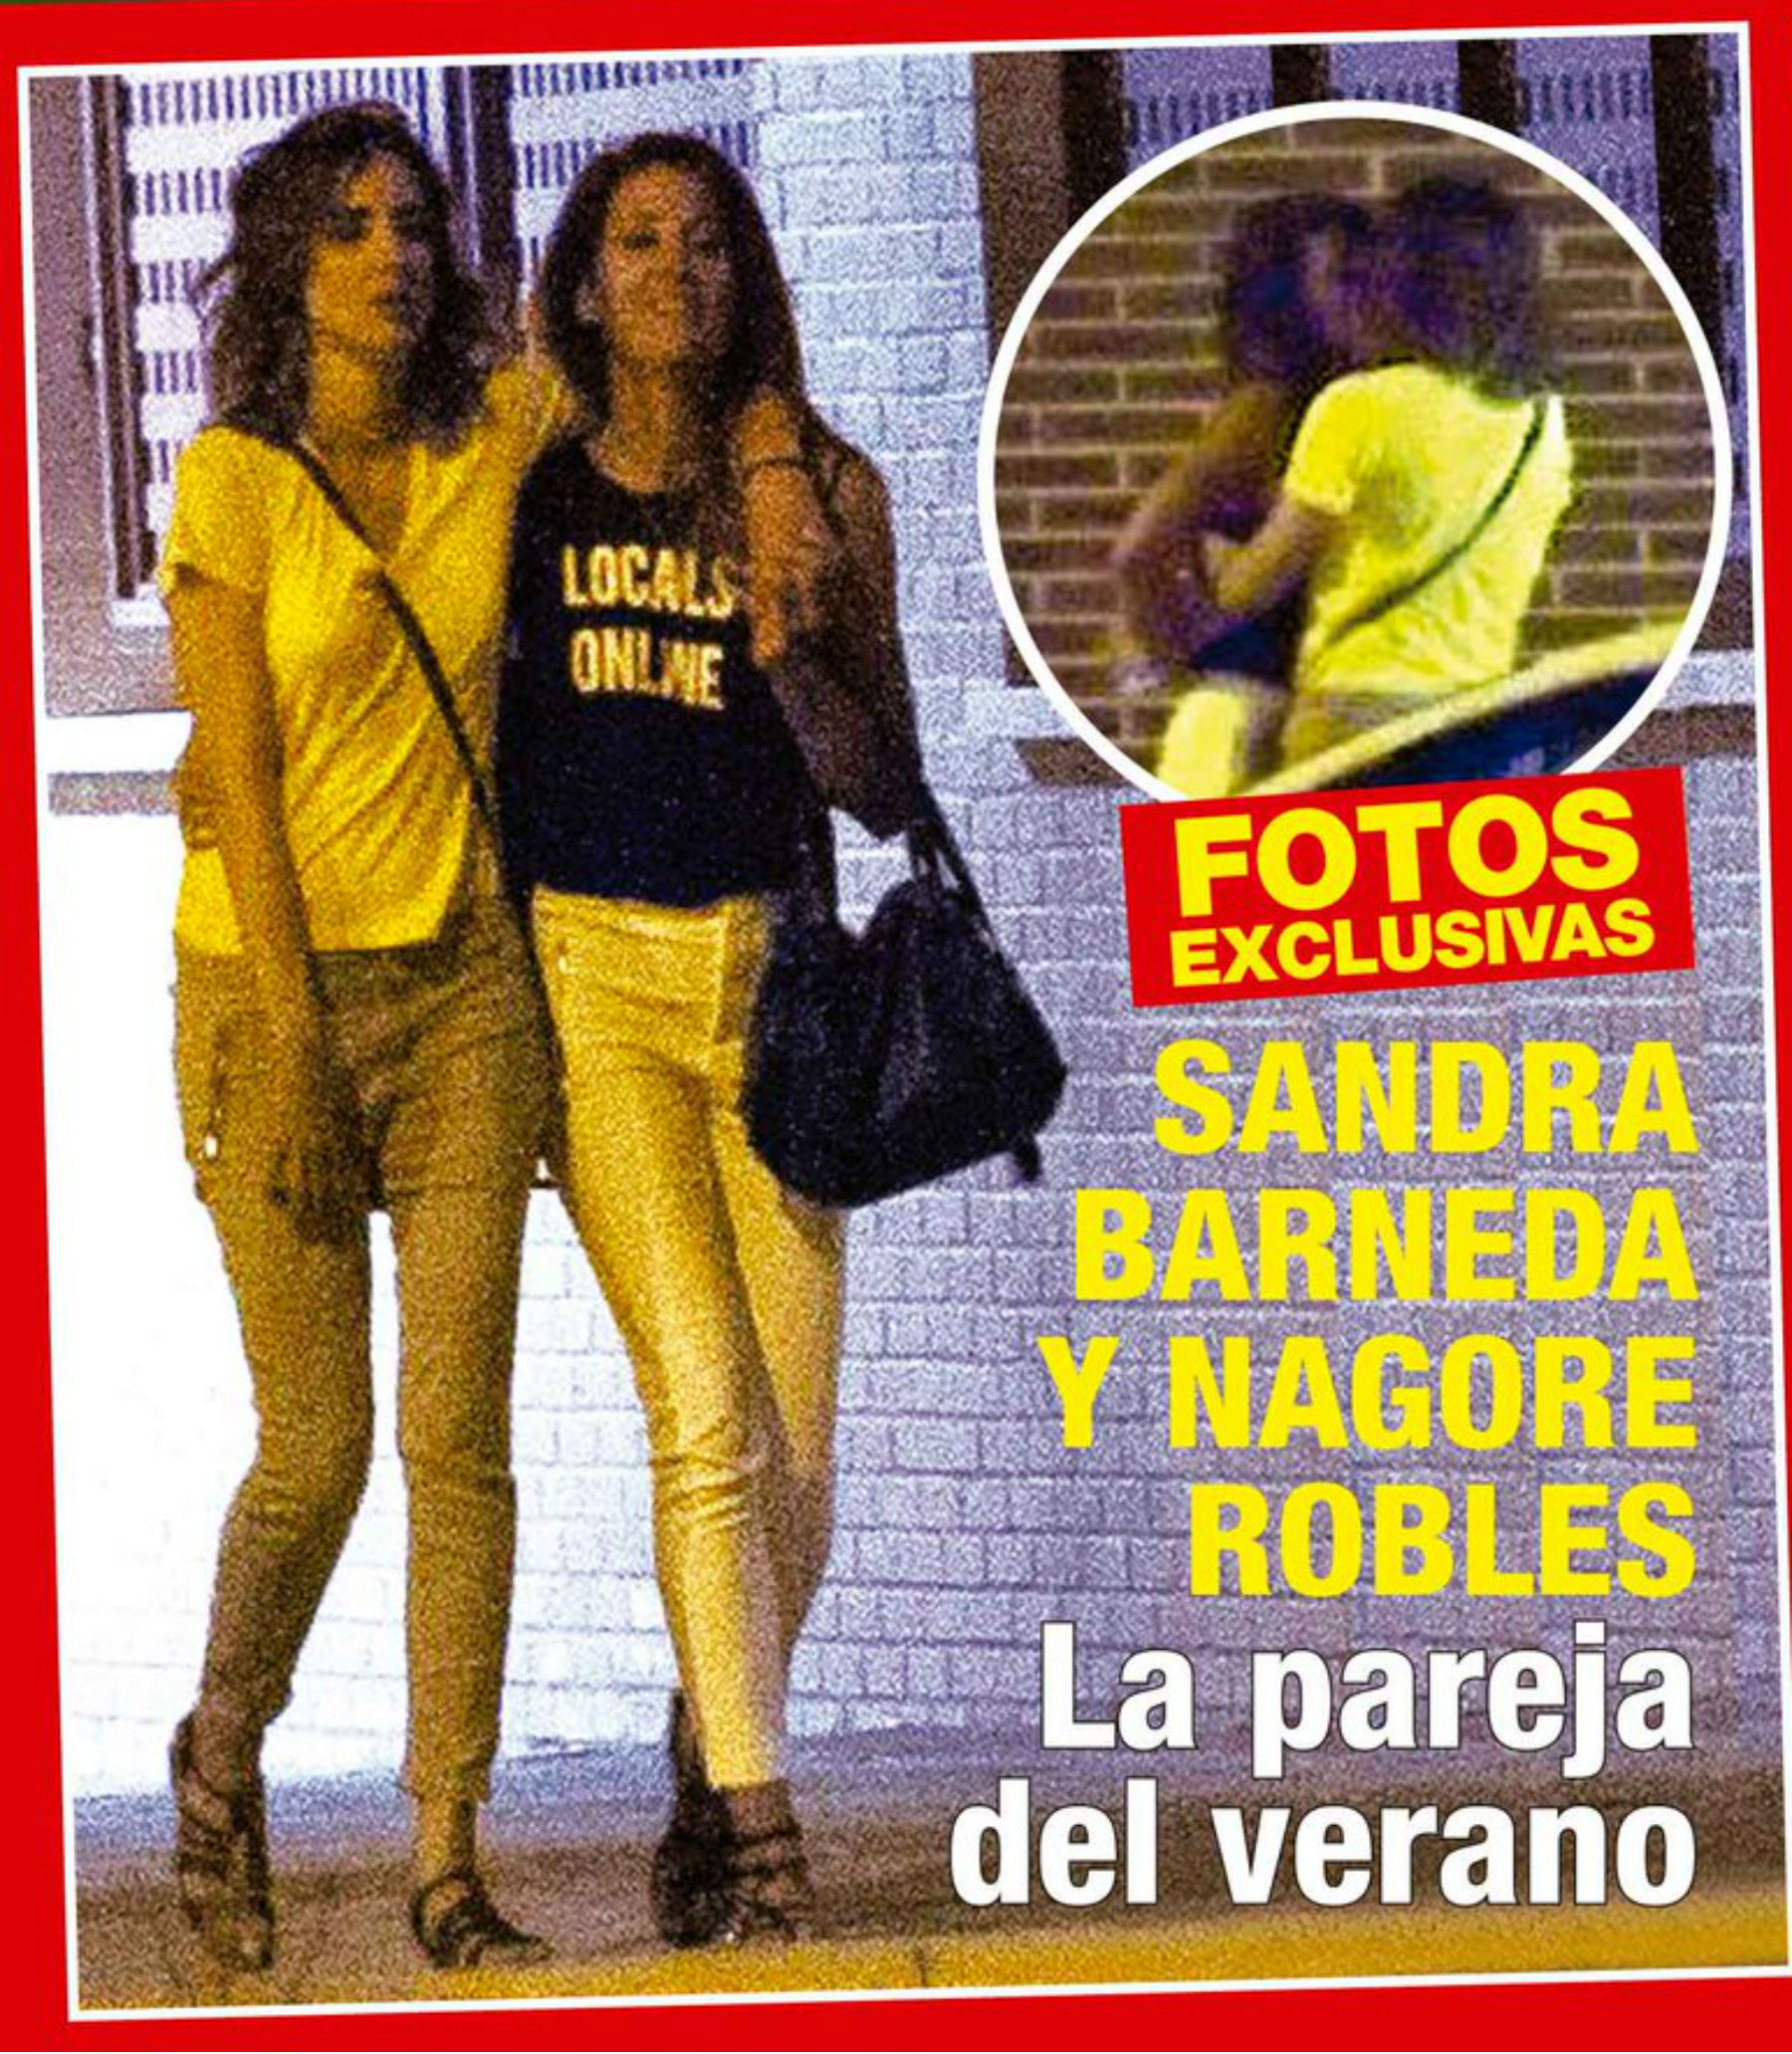 Nagore Robles y Sandra Barneda protagonizan una tensa pelea